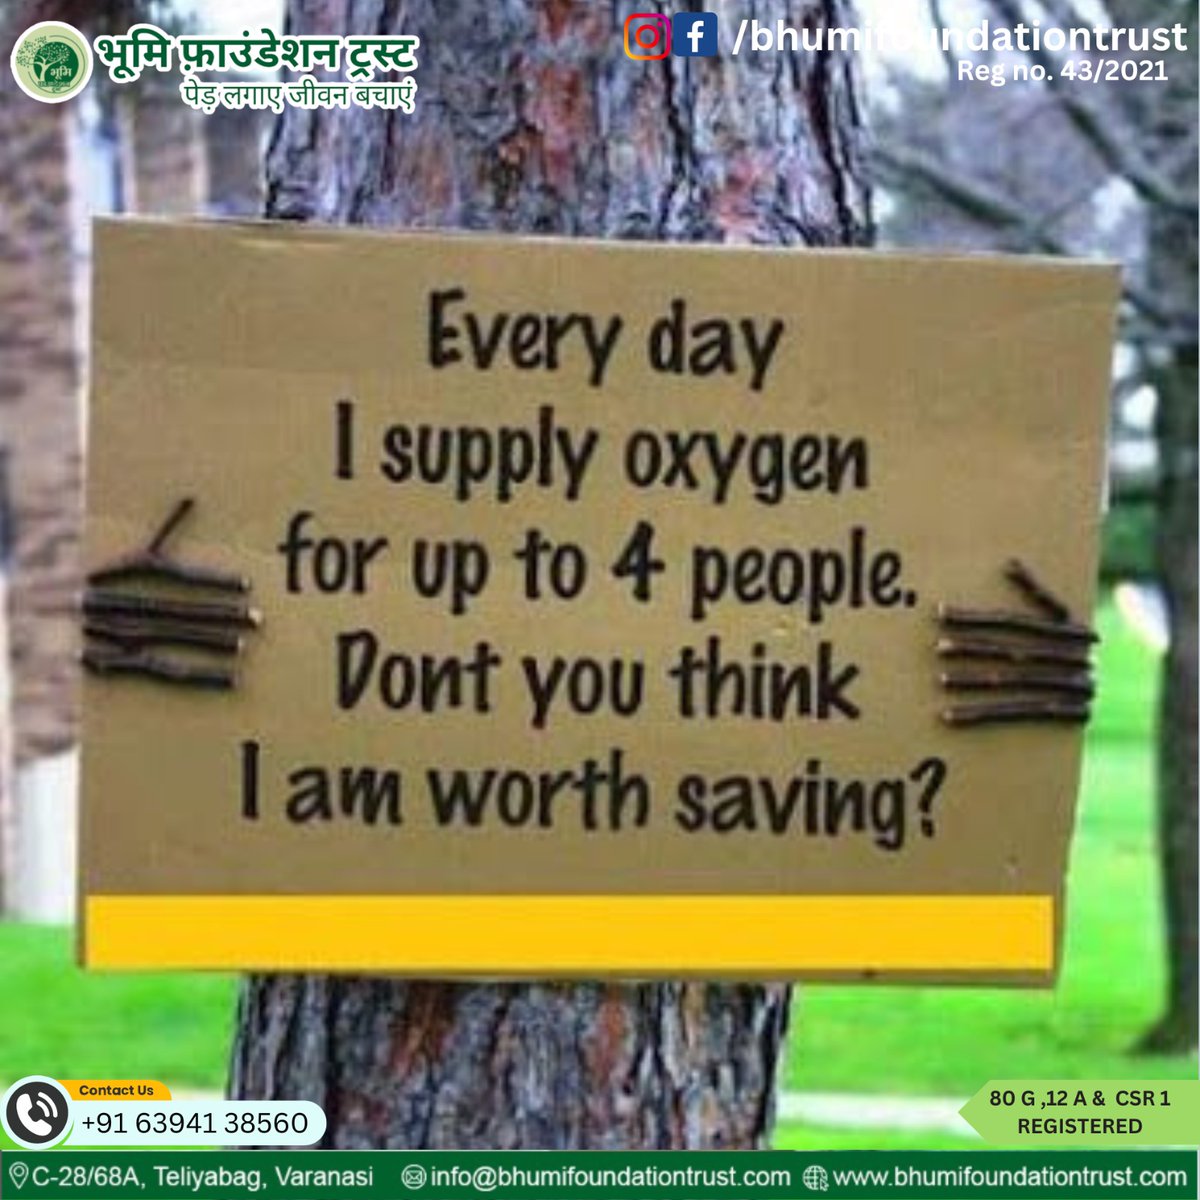 पेड़ों को बचाओ, वे हमें ऑक्सीजन प्रदान करते हैं
जुड़िए भूमि फाऊंडेशन ट्रस्ट से :
bhumifoundationtrust.com

#saveenvironment #bhumifoundation #airpollution #savetree #savefuture #save #pollutionfreeindia